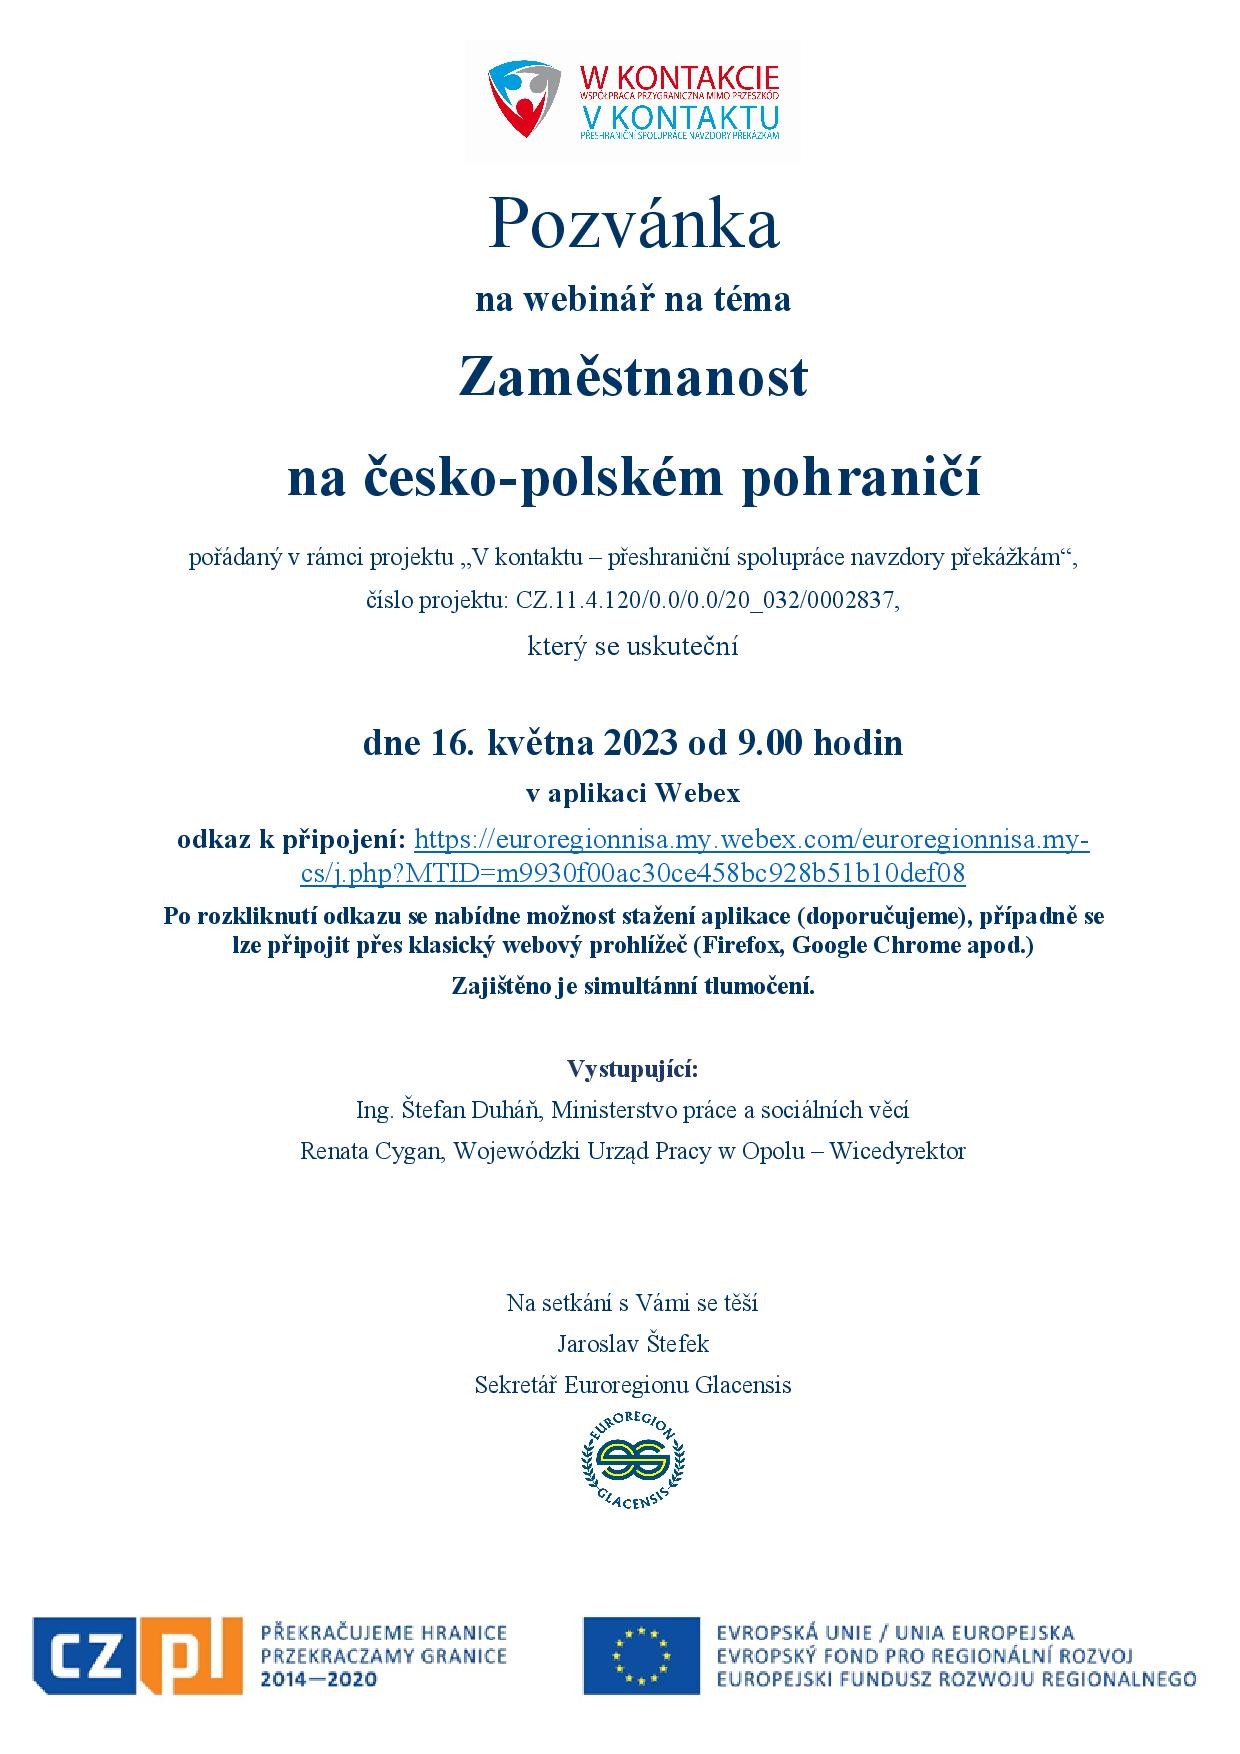 Pozvánka_Zaměstnanost na CZ-PL pohraničí_16.5.2023